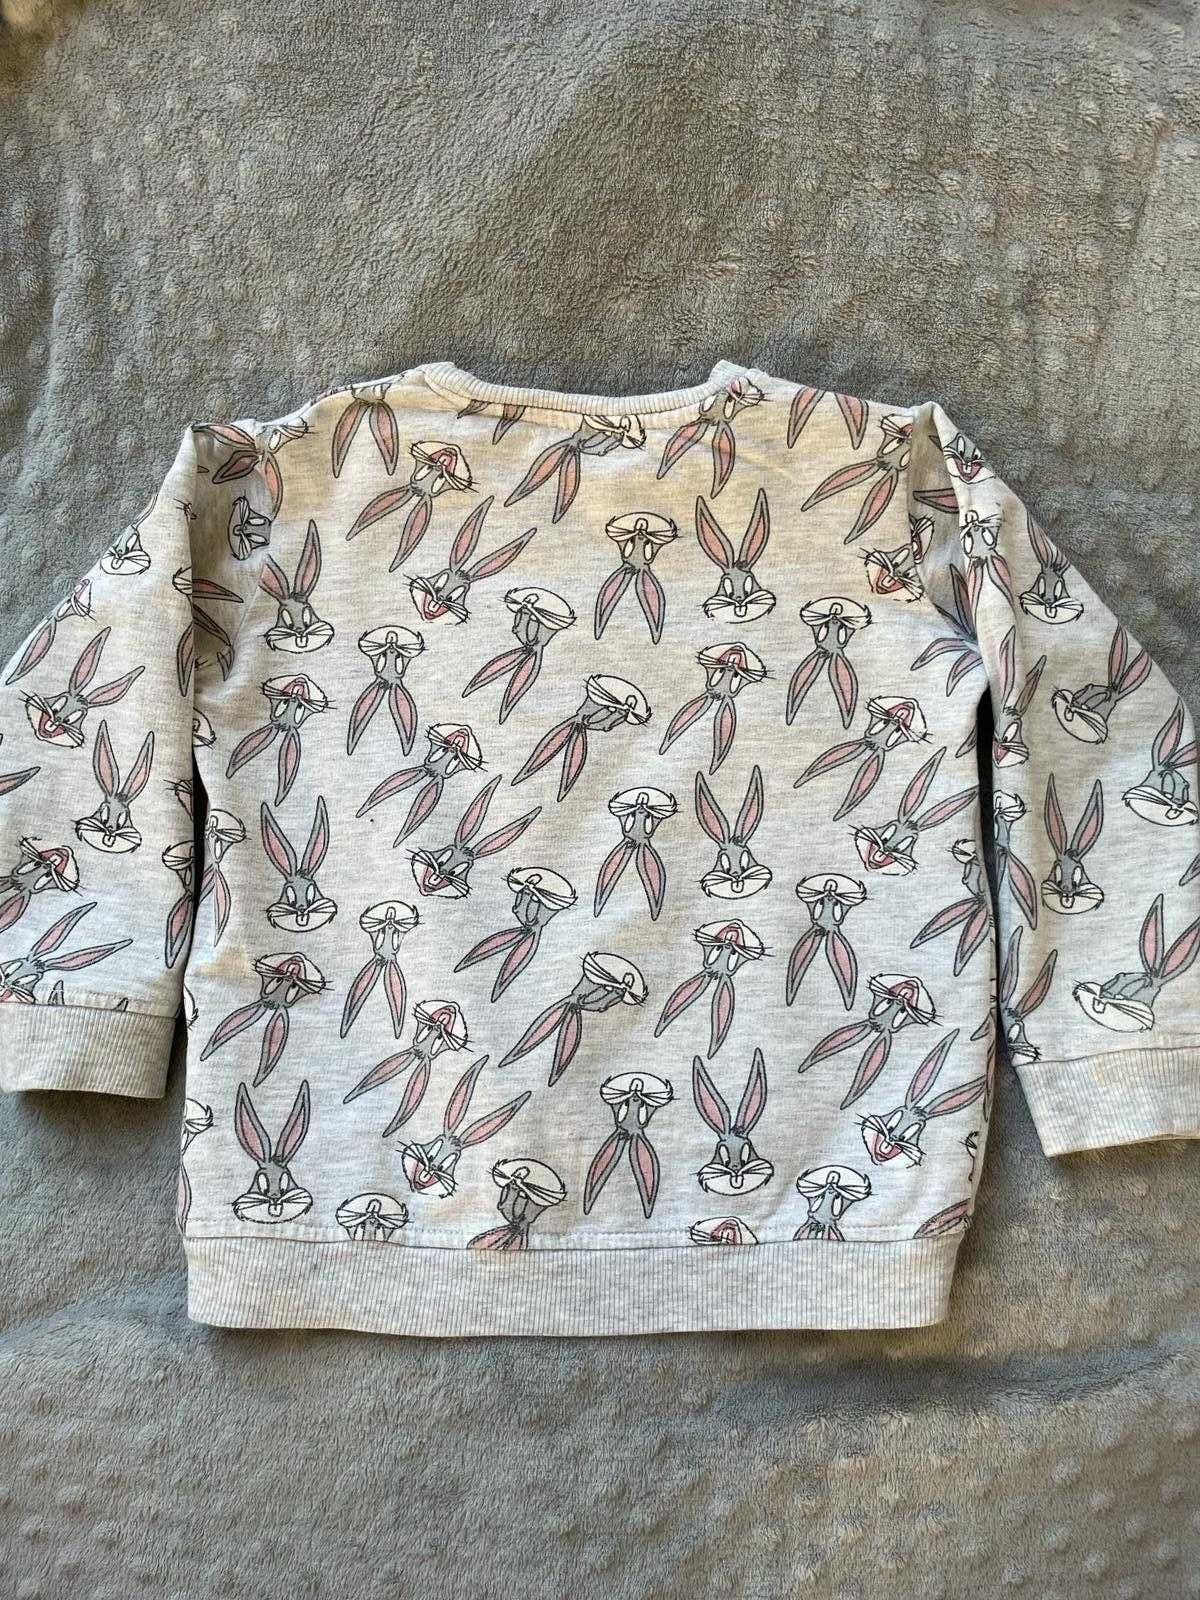 Cienka, szara bluza w króliki dla dziewczynki 98.cm.